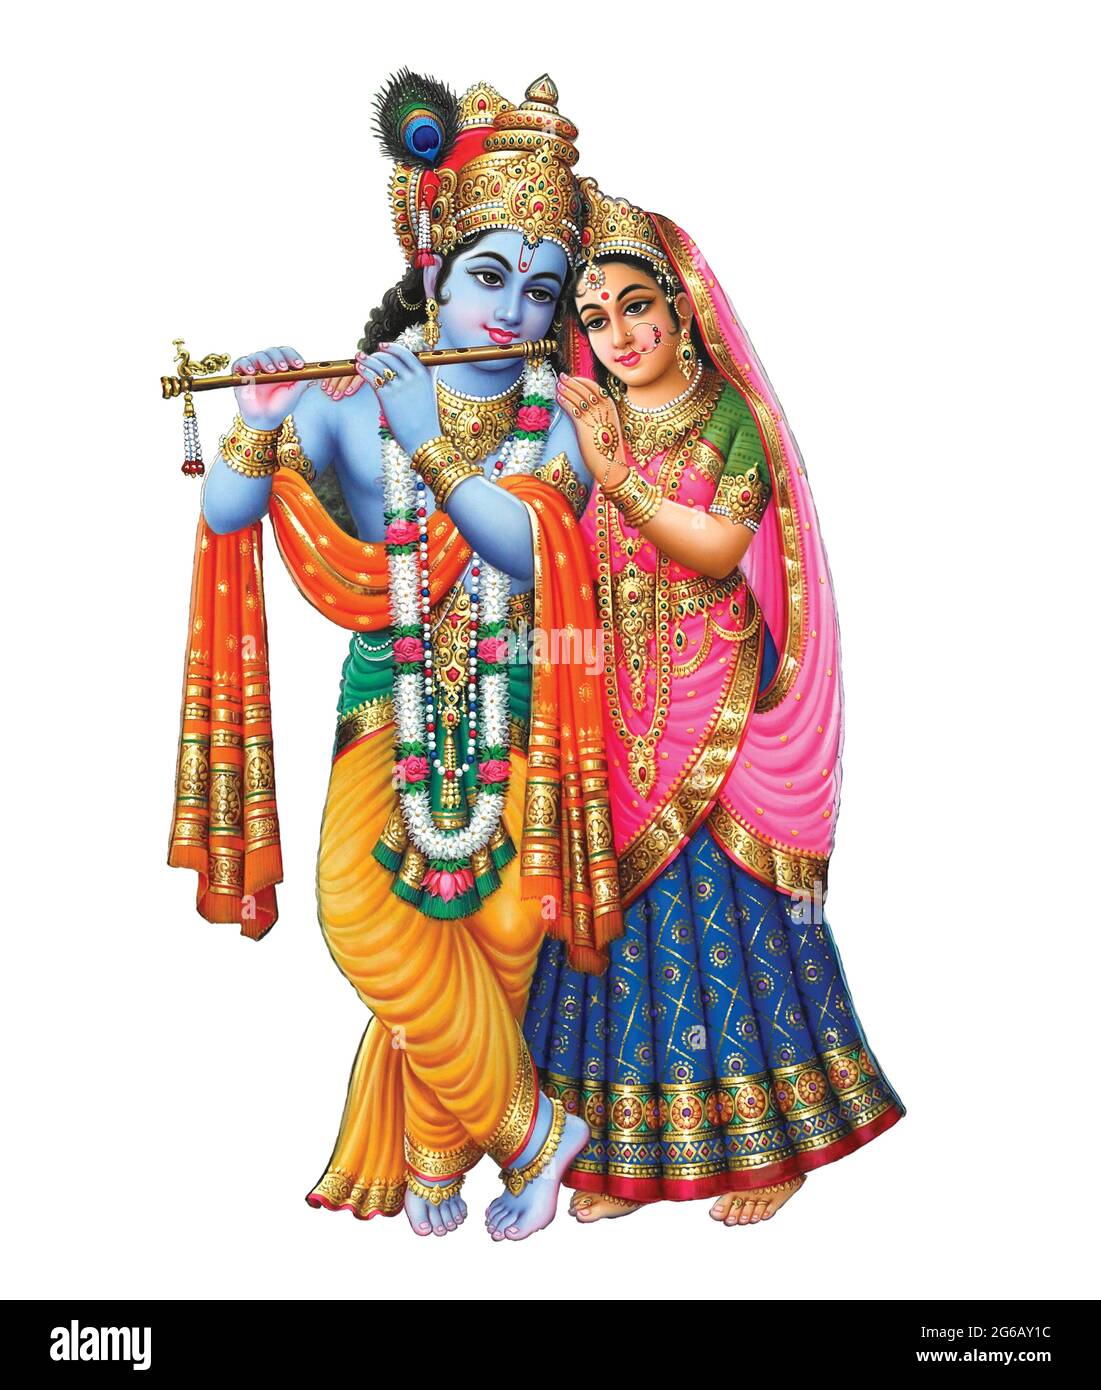 God Radhakrishna, Indian Lord Krishna, Indian Mythological Image of Radhakrishna Stock Photo